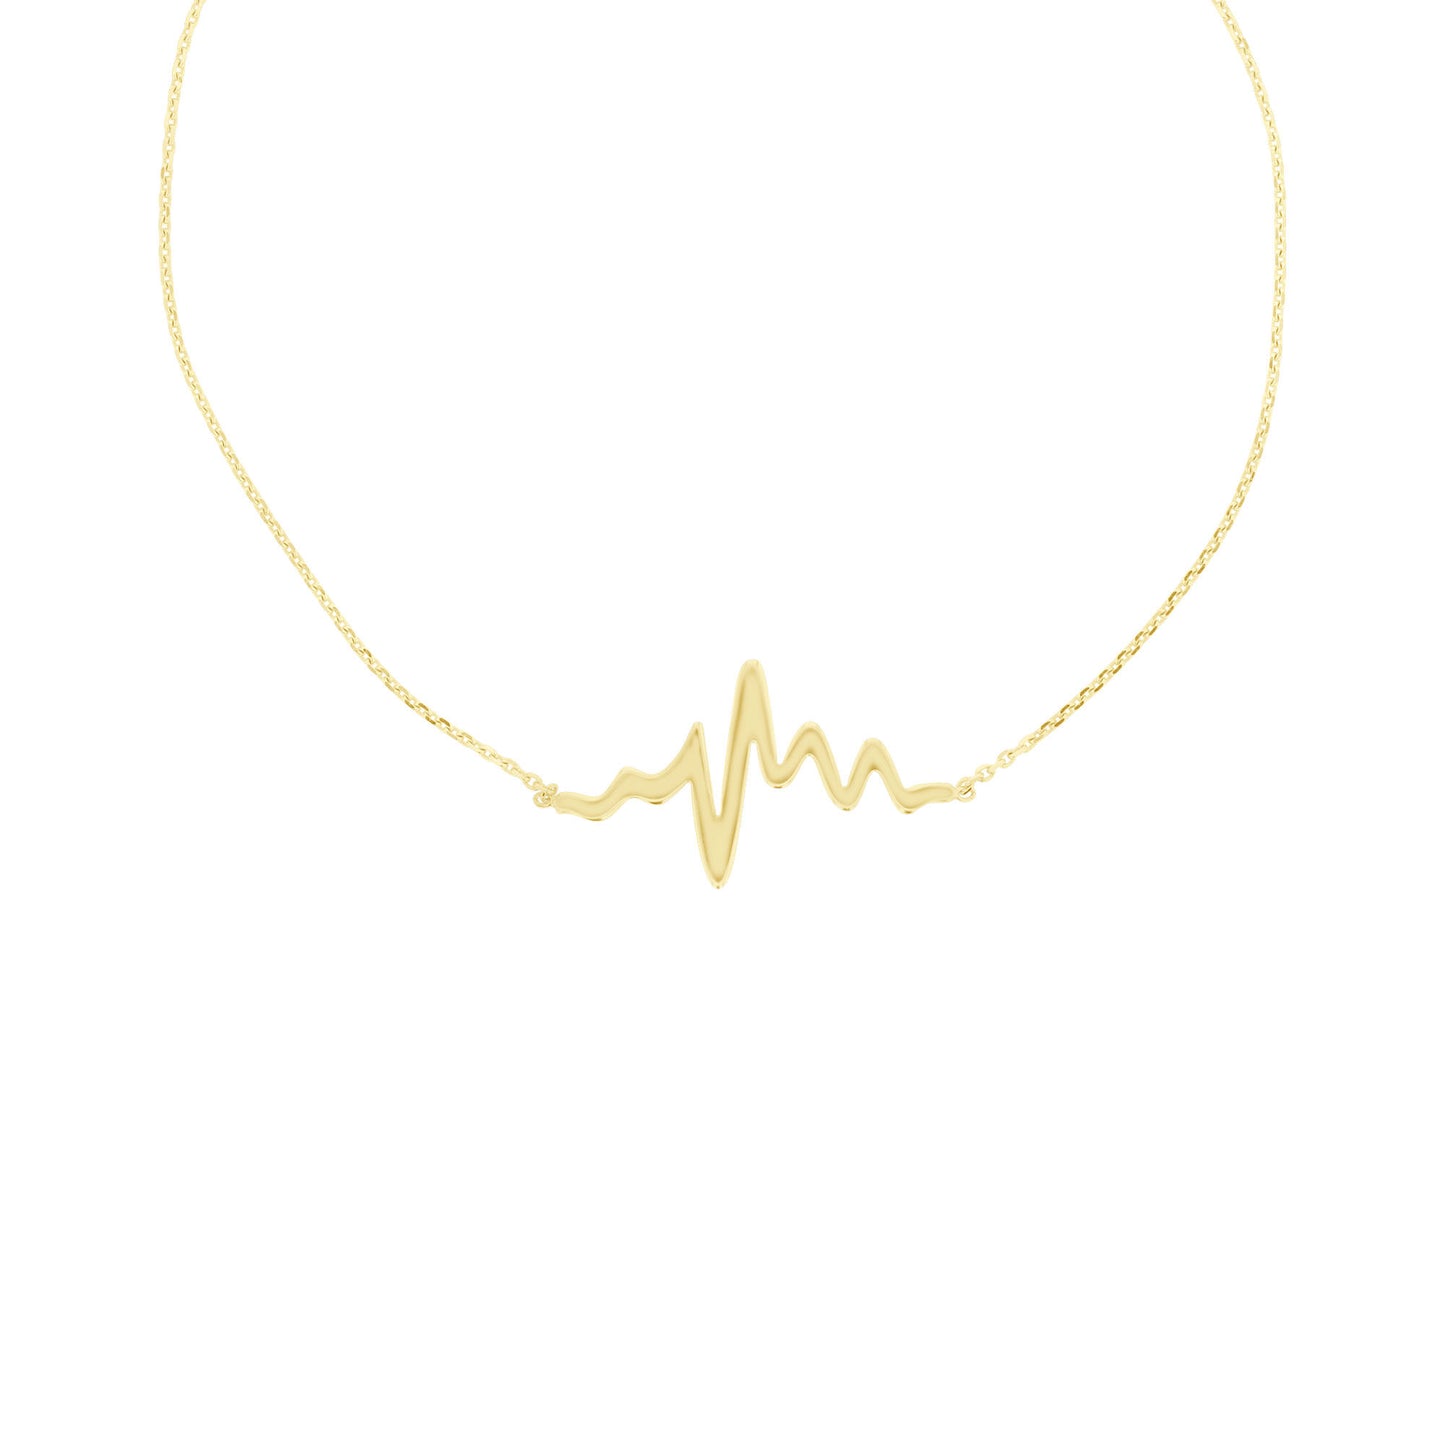 Heartbeat Chain Bracelet